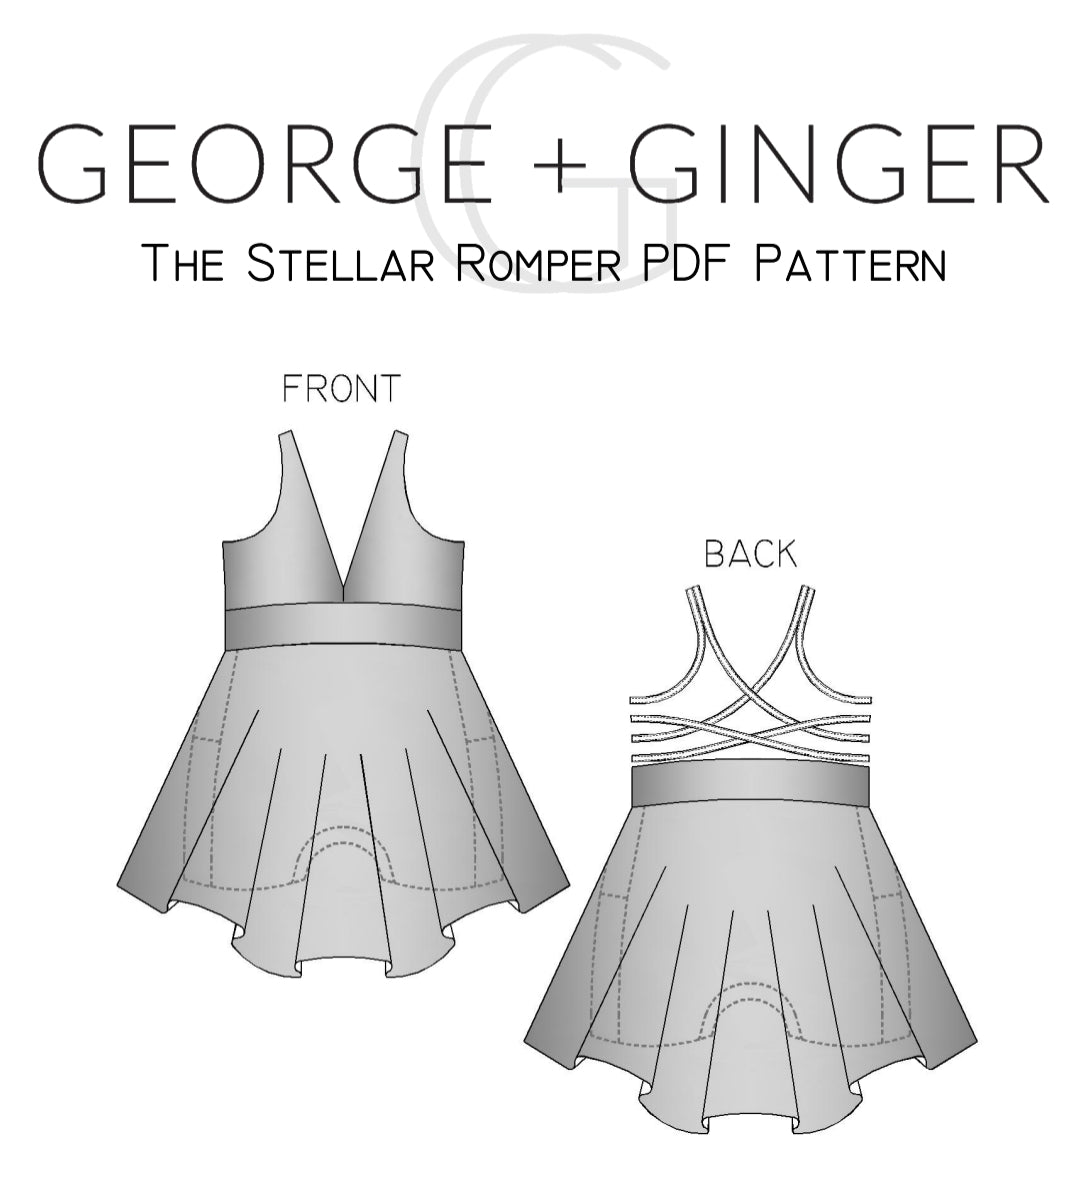 The Stellar Romper PDF Sewing Pattern